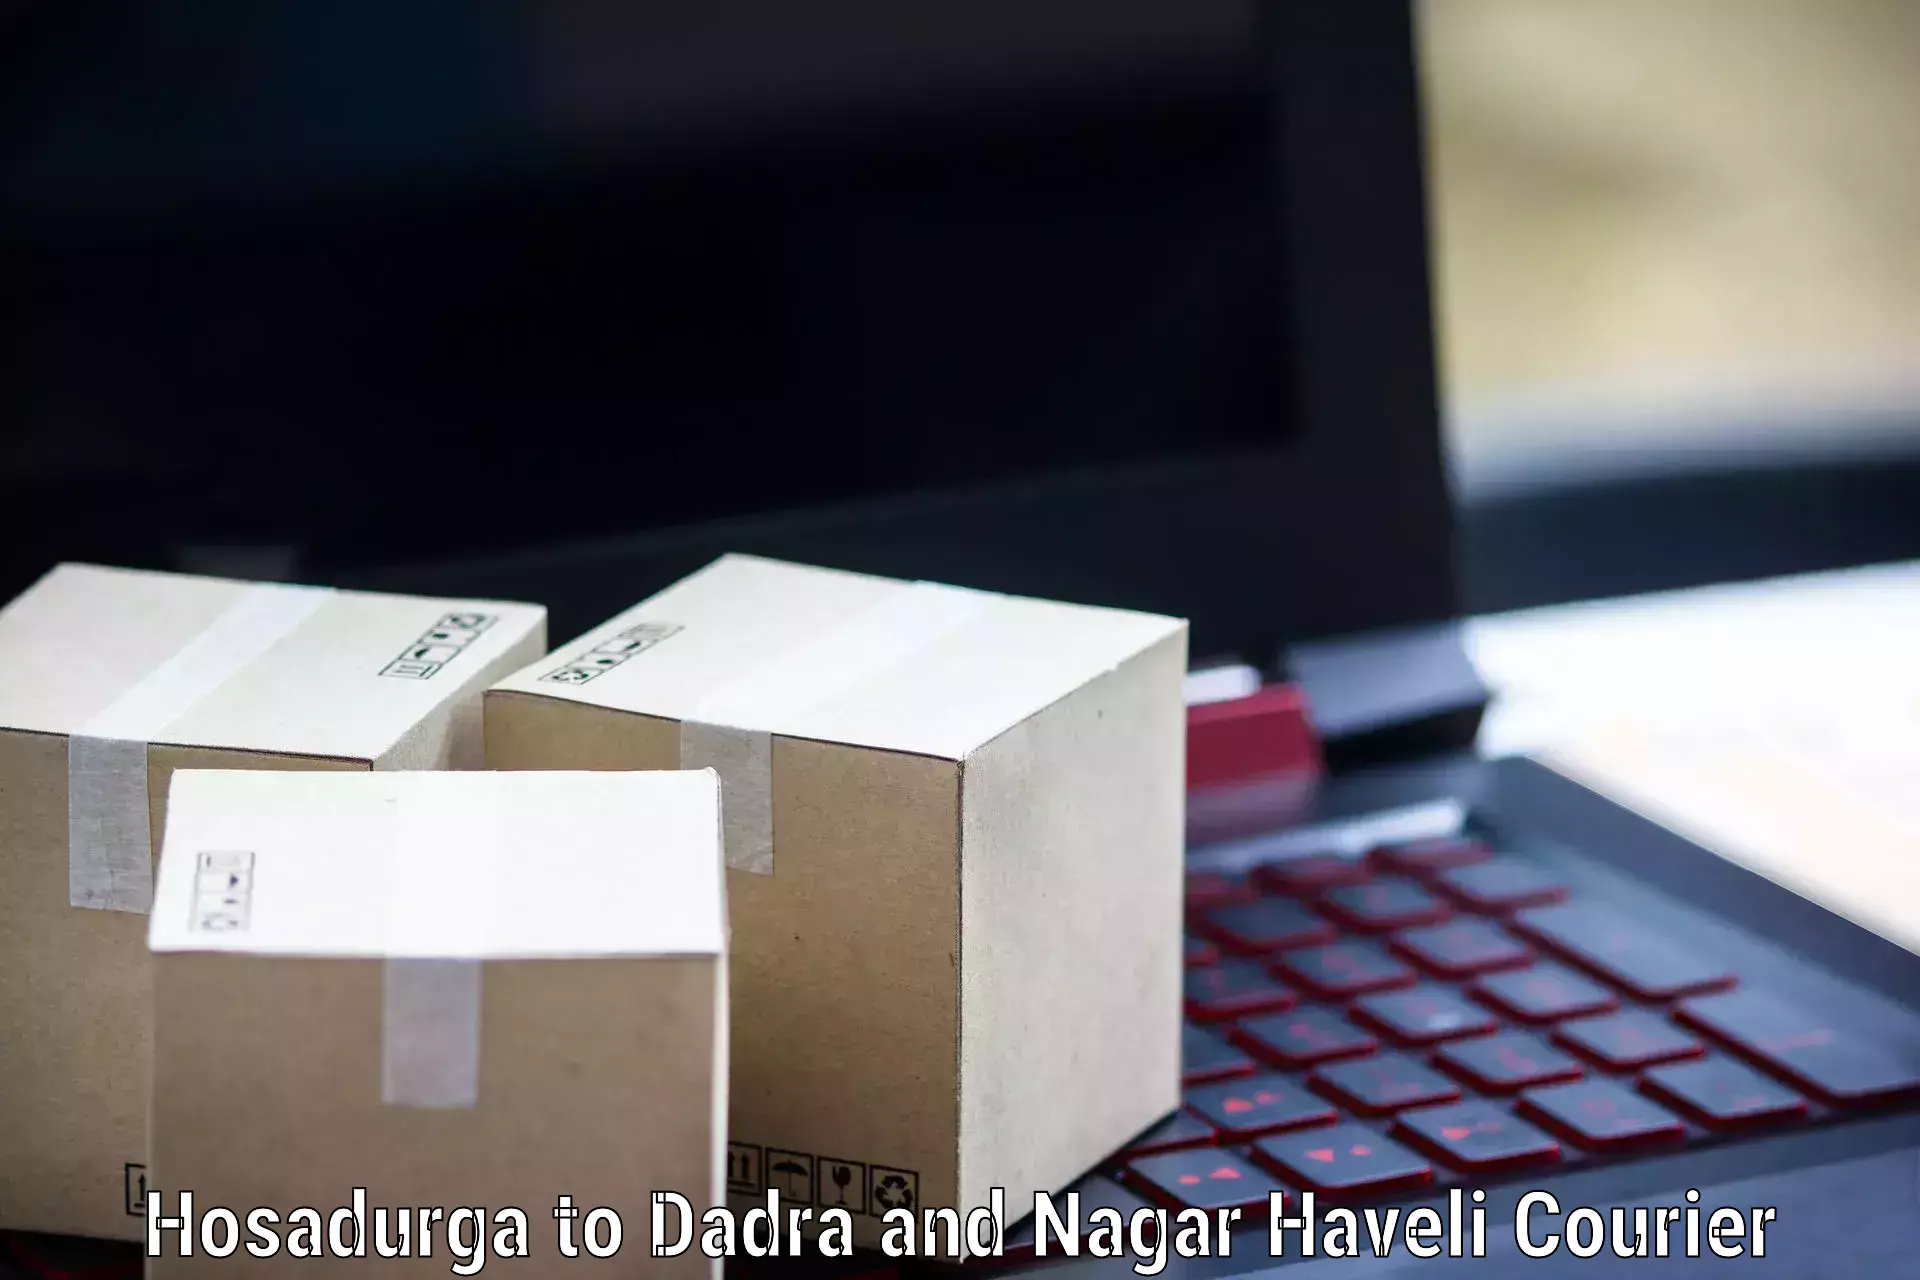 Next-generation courier services Hosadurga to Dadra and Nagar Haveli